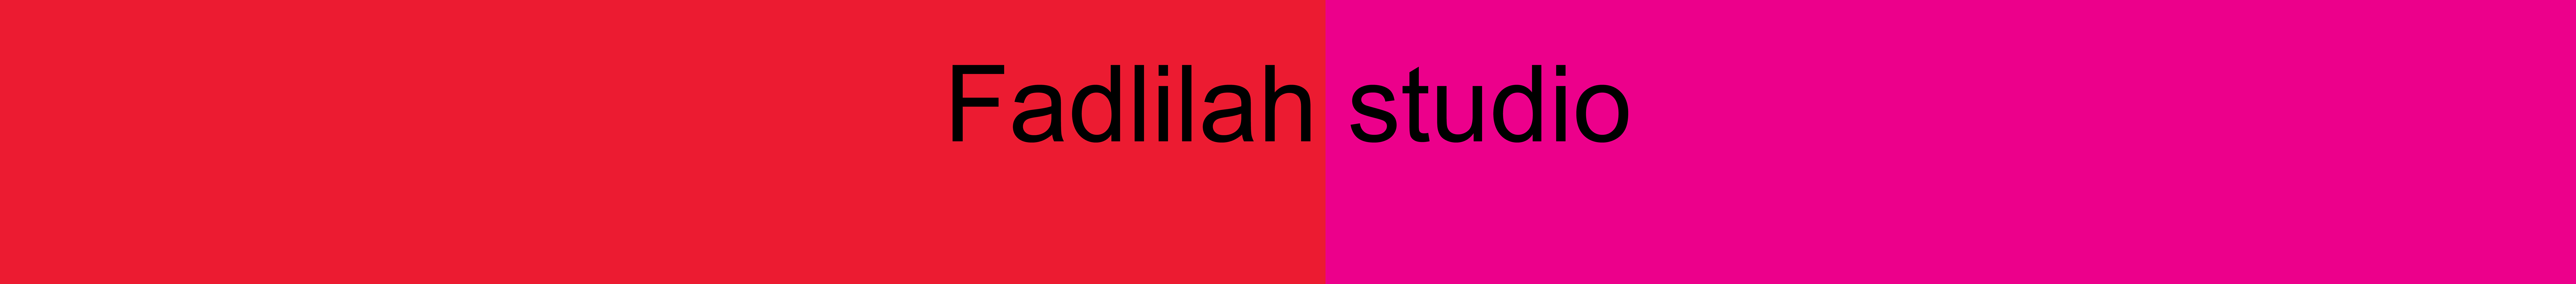 Banner de perfil de Fina Fadlilah